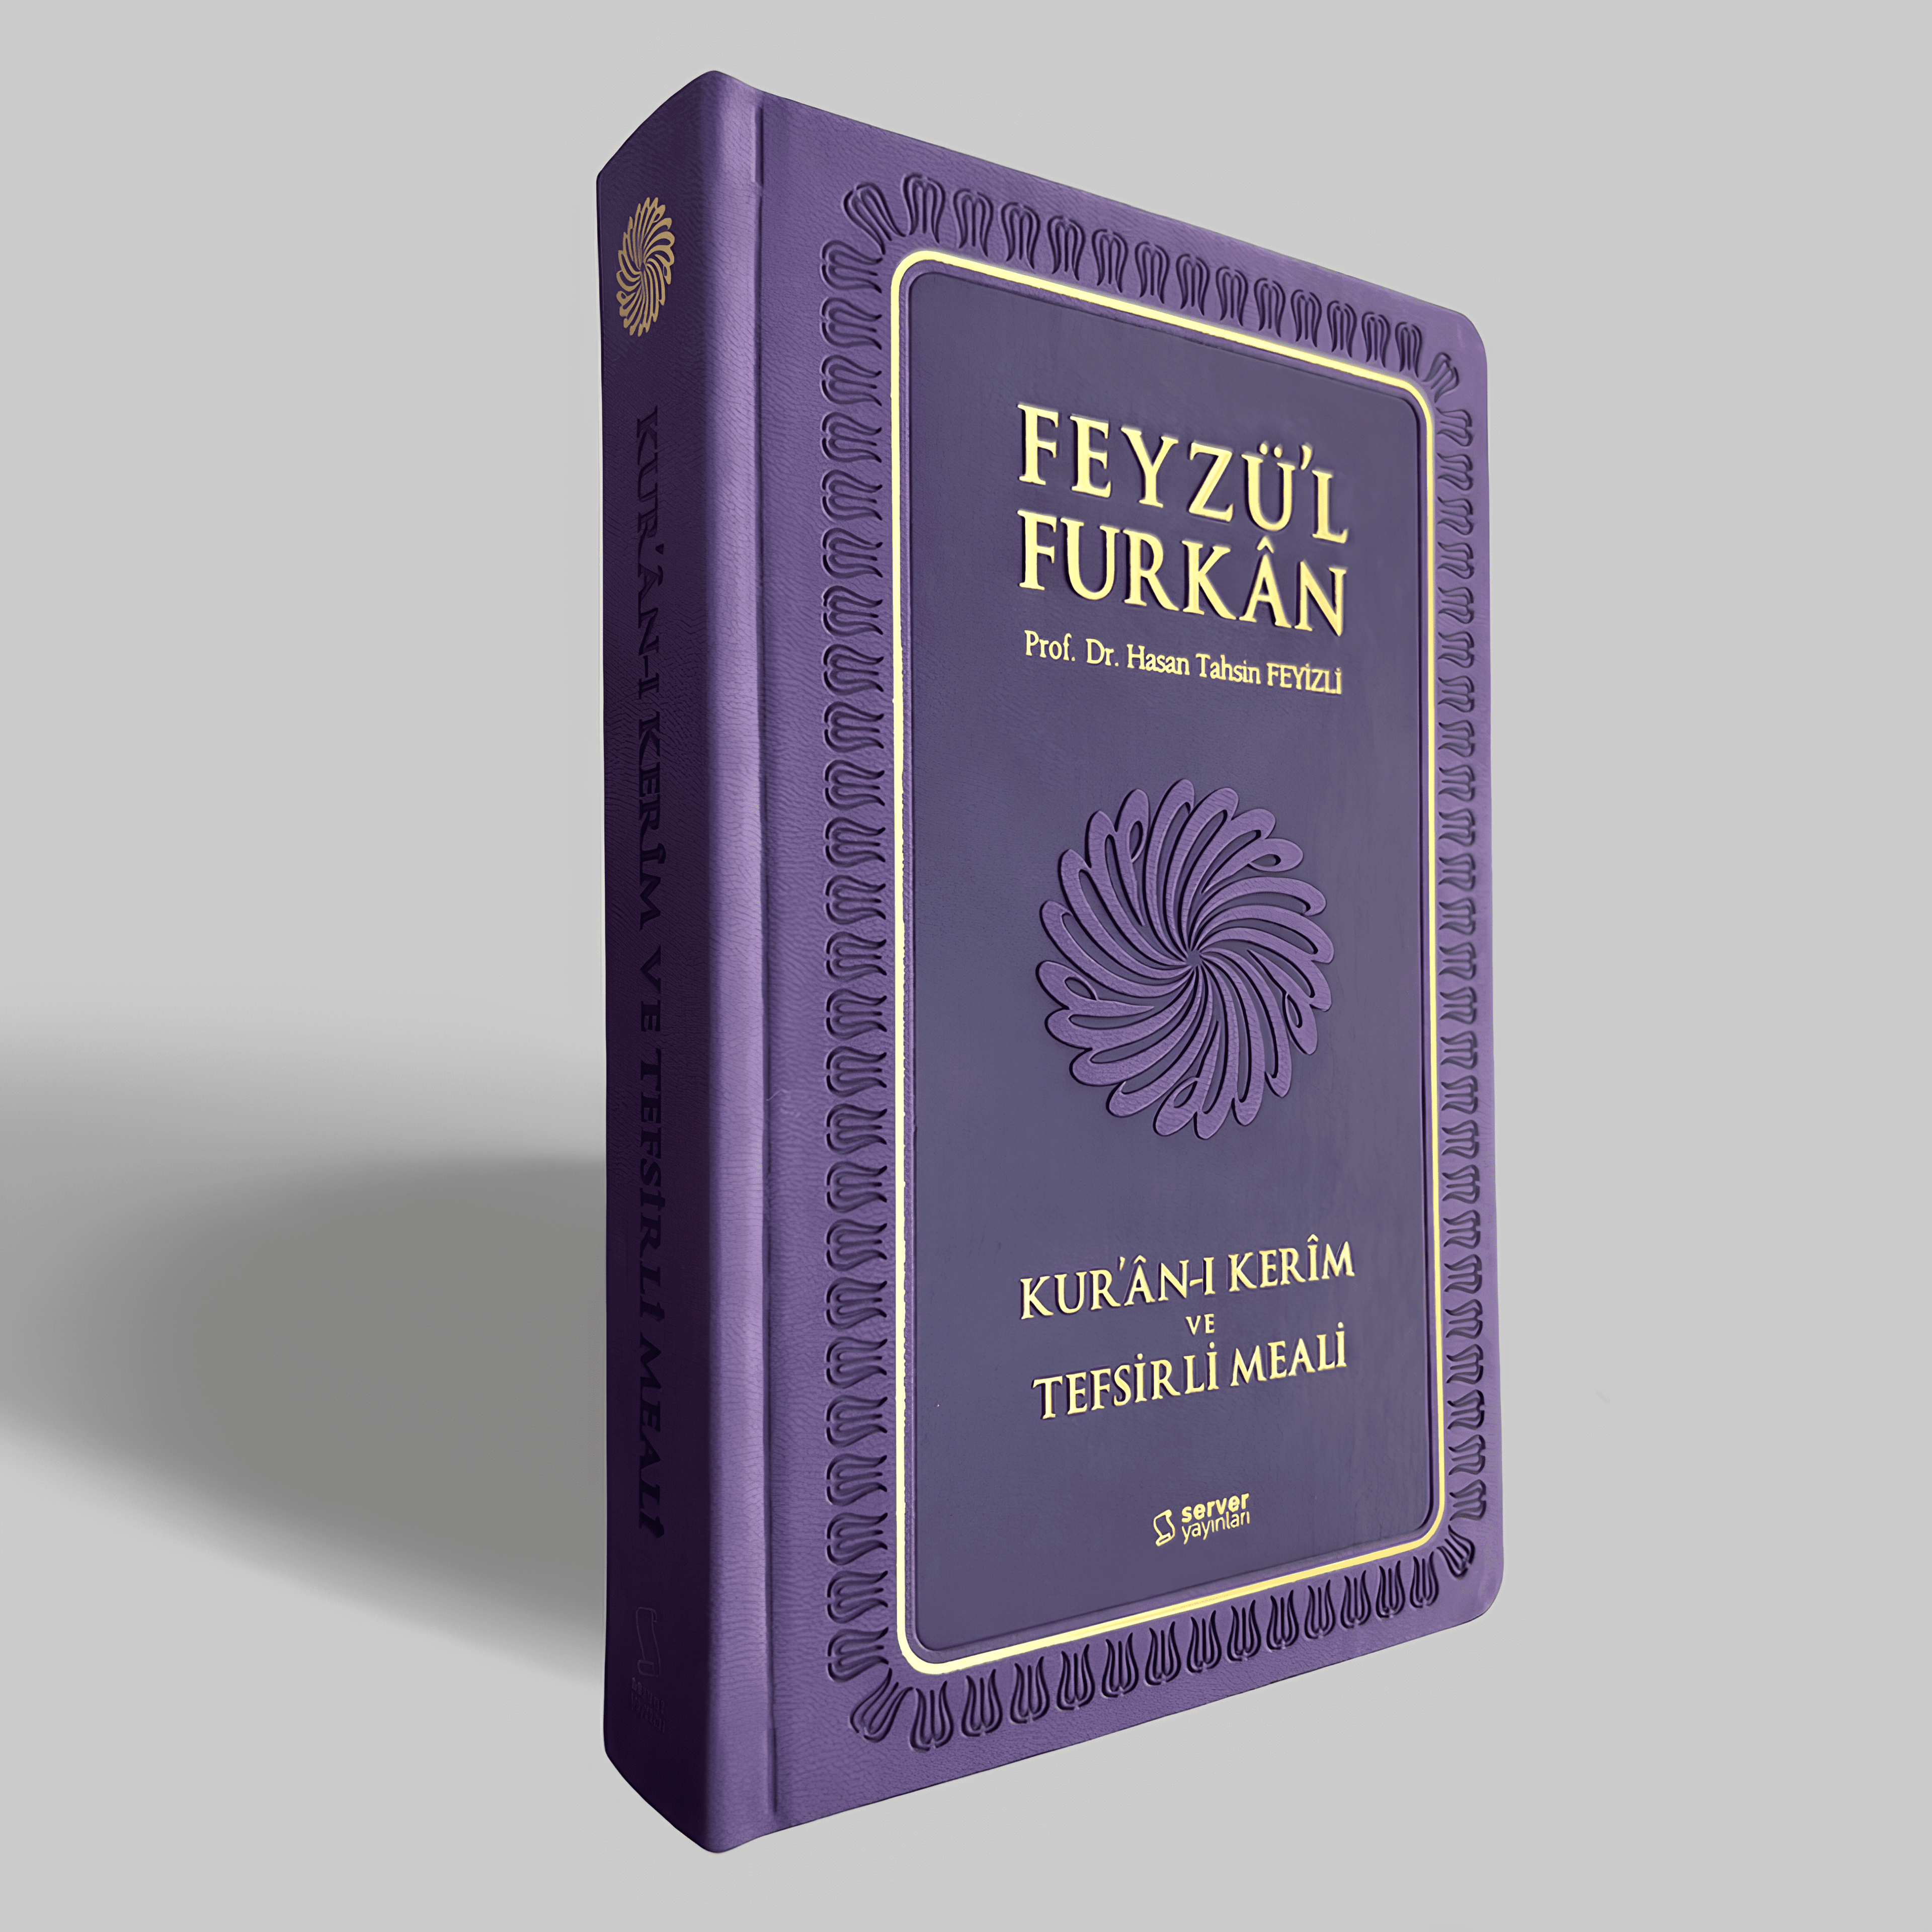 Feyzü'l Furkan Kur'ân-ı Kerîm ve Tefsirli Meali (Orta Boy - Mushaf ve Meal - Ciltli) 5 Renk